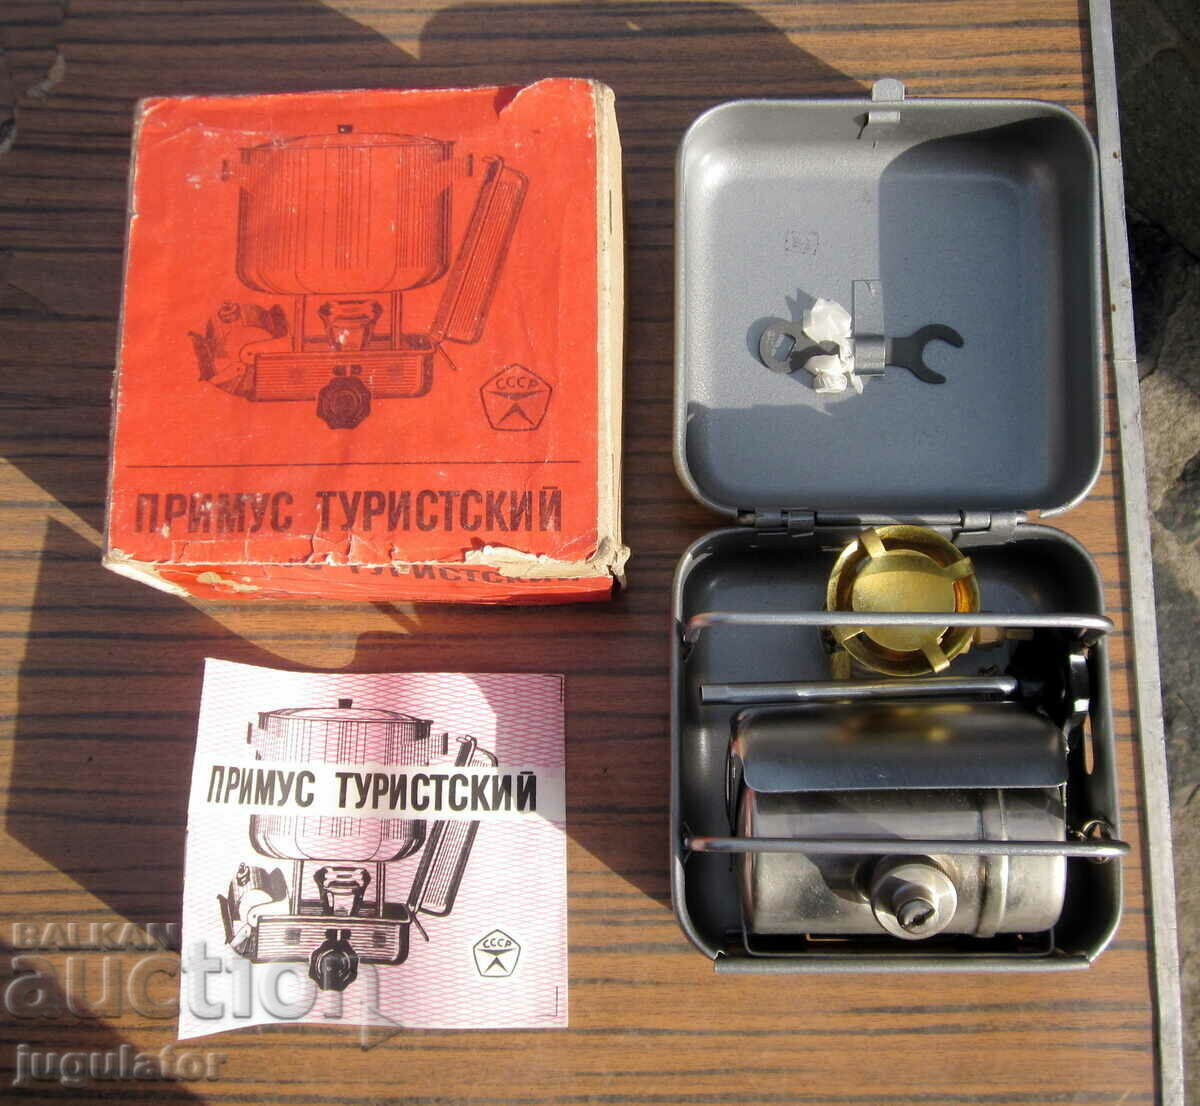 Руски примус туристически спиртен котлон с кутия и книжка